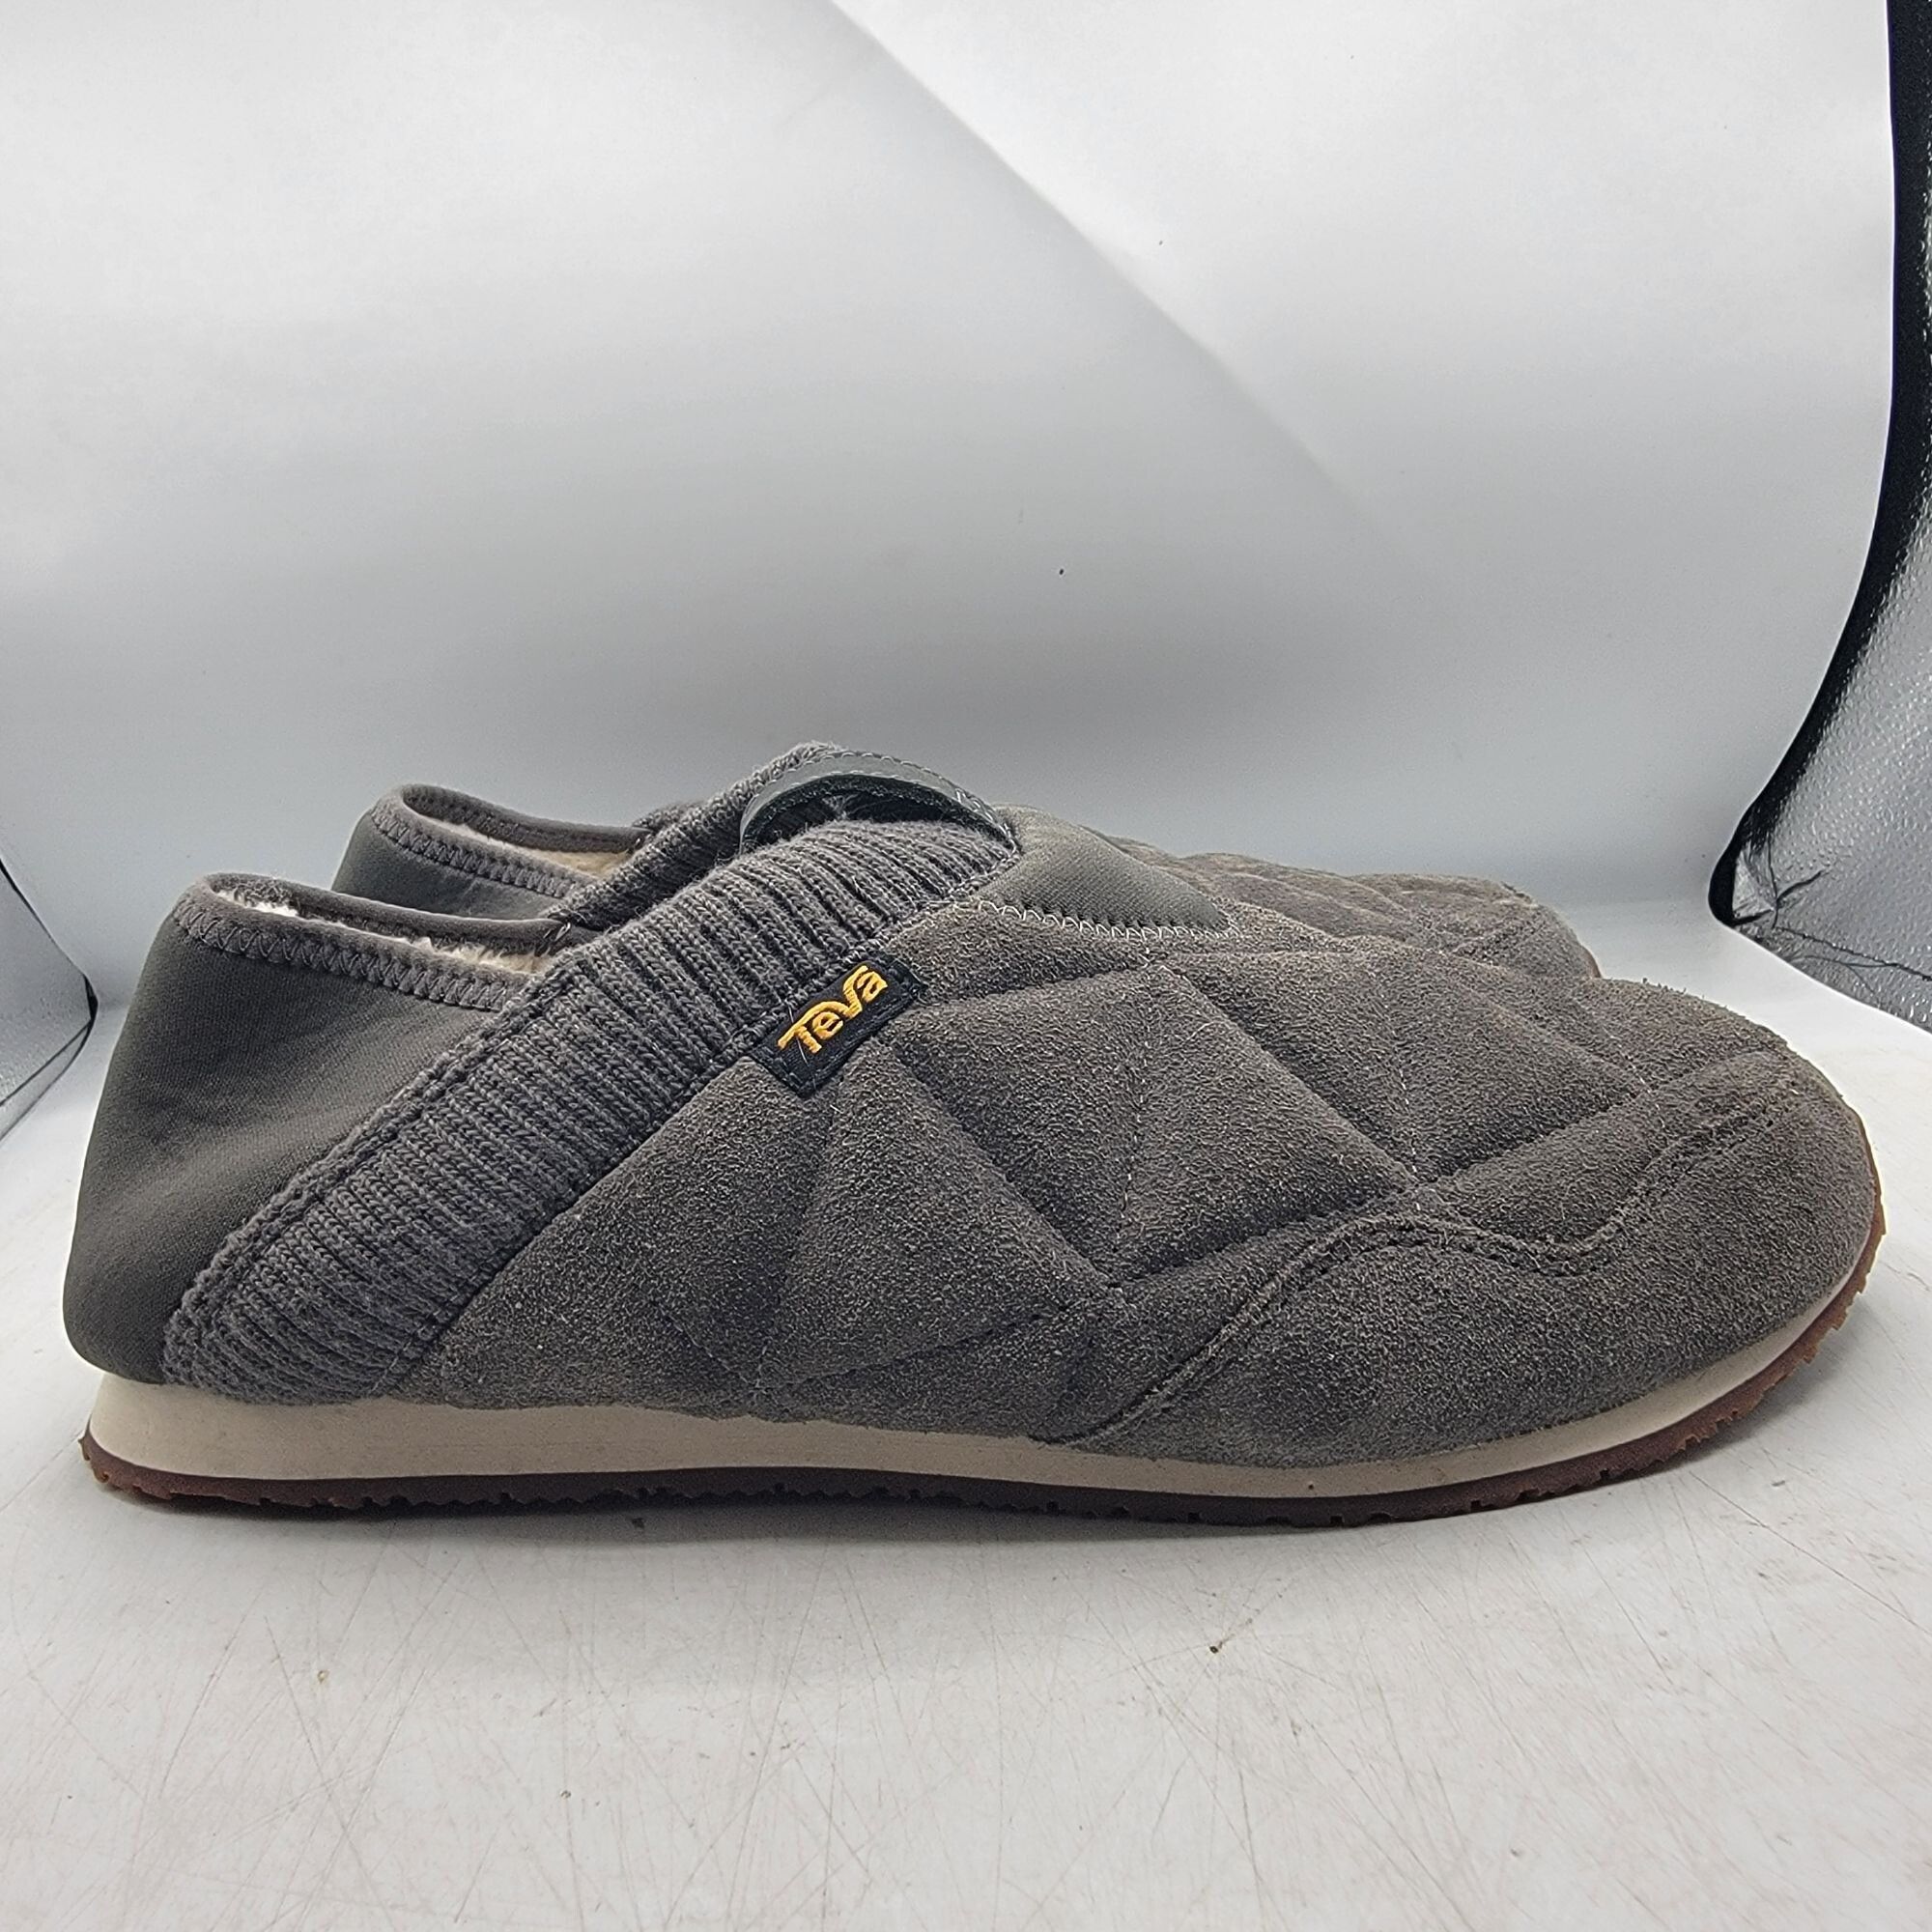 Teva Teva ReEmber Plushed Mens 11 Gray Slipper Shoes Comfort Line Size US 11 / EU 44 - 7 Thumbnail